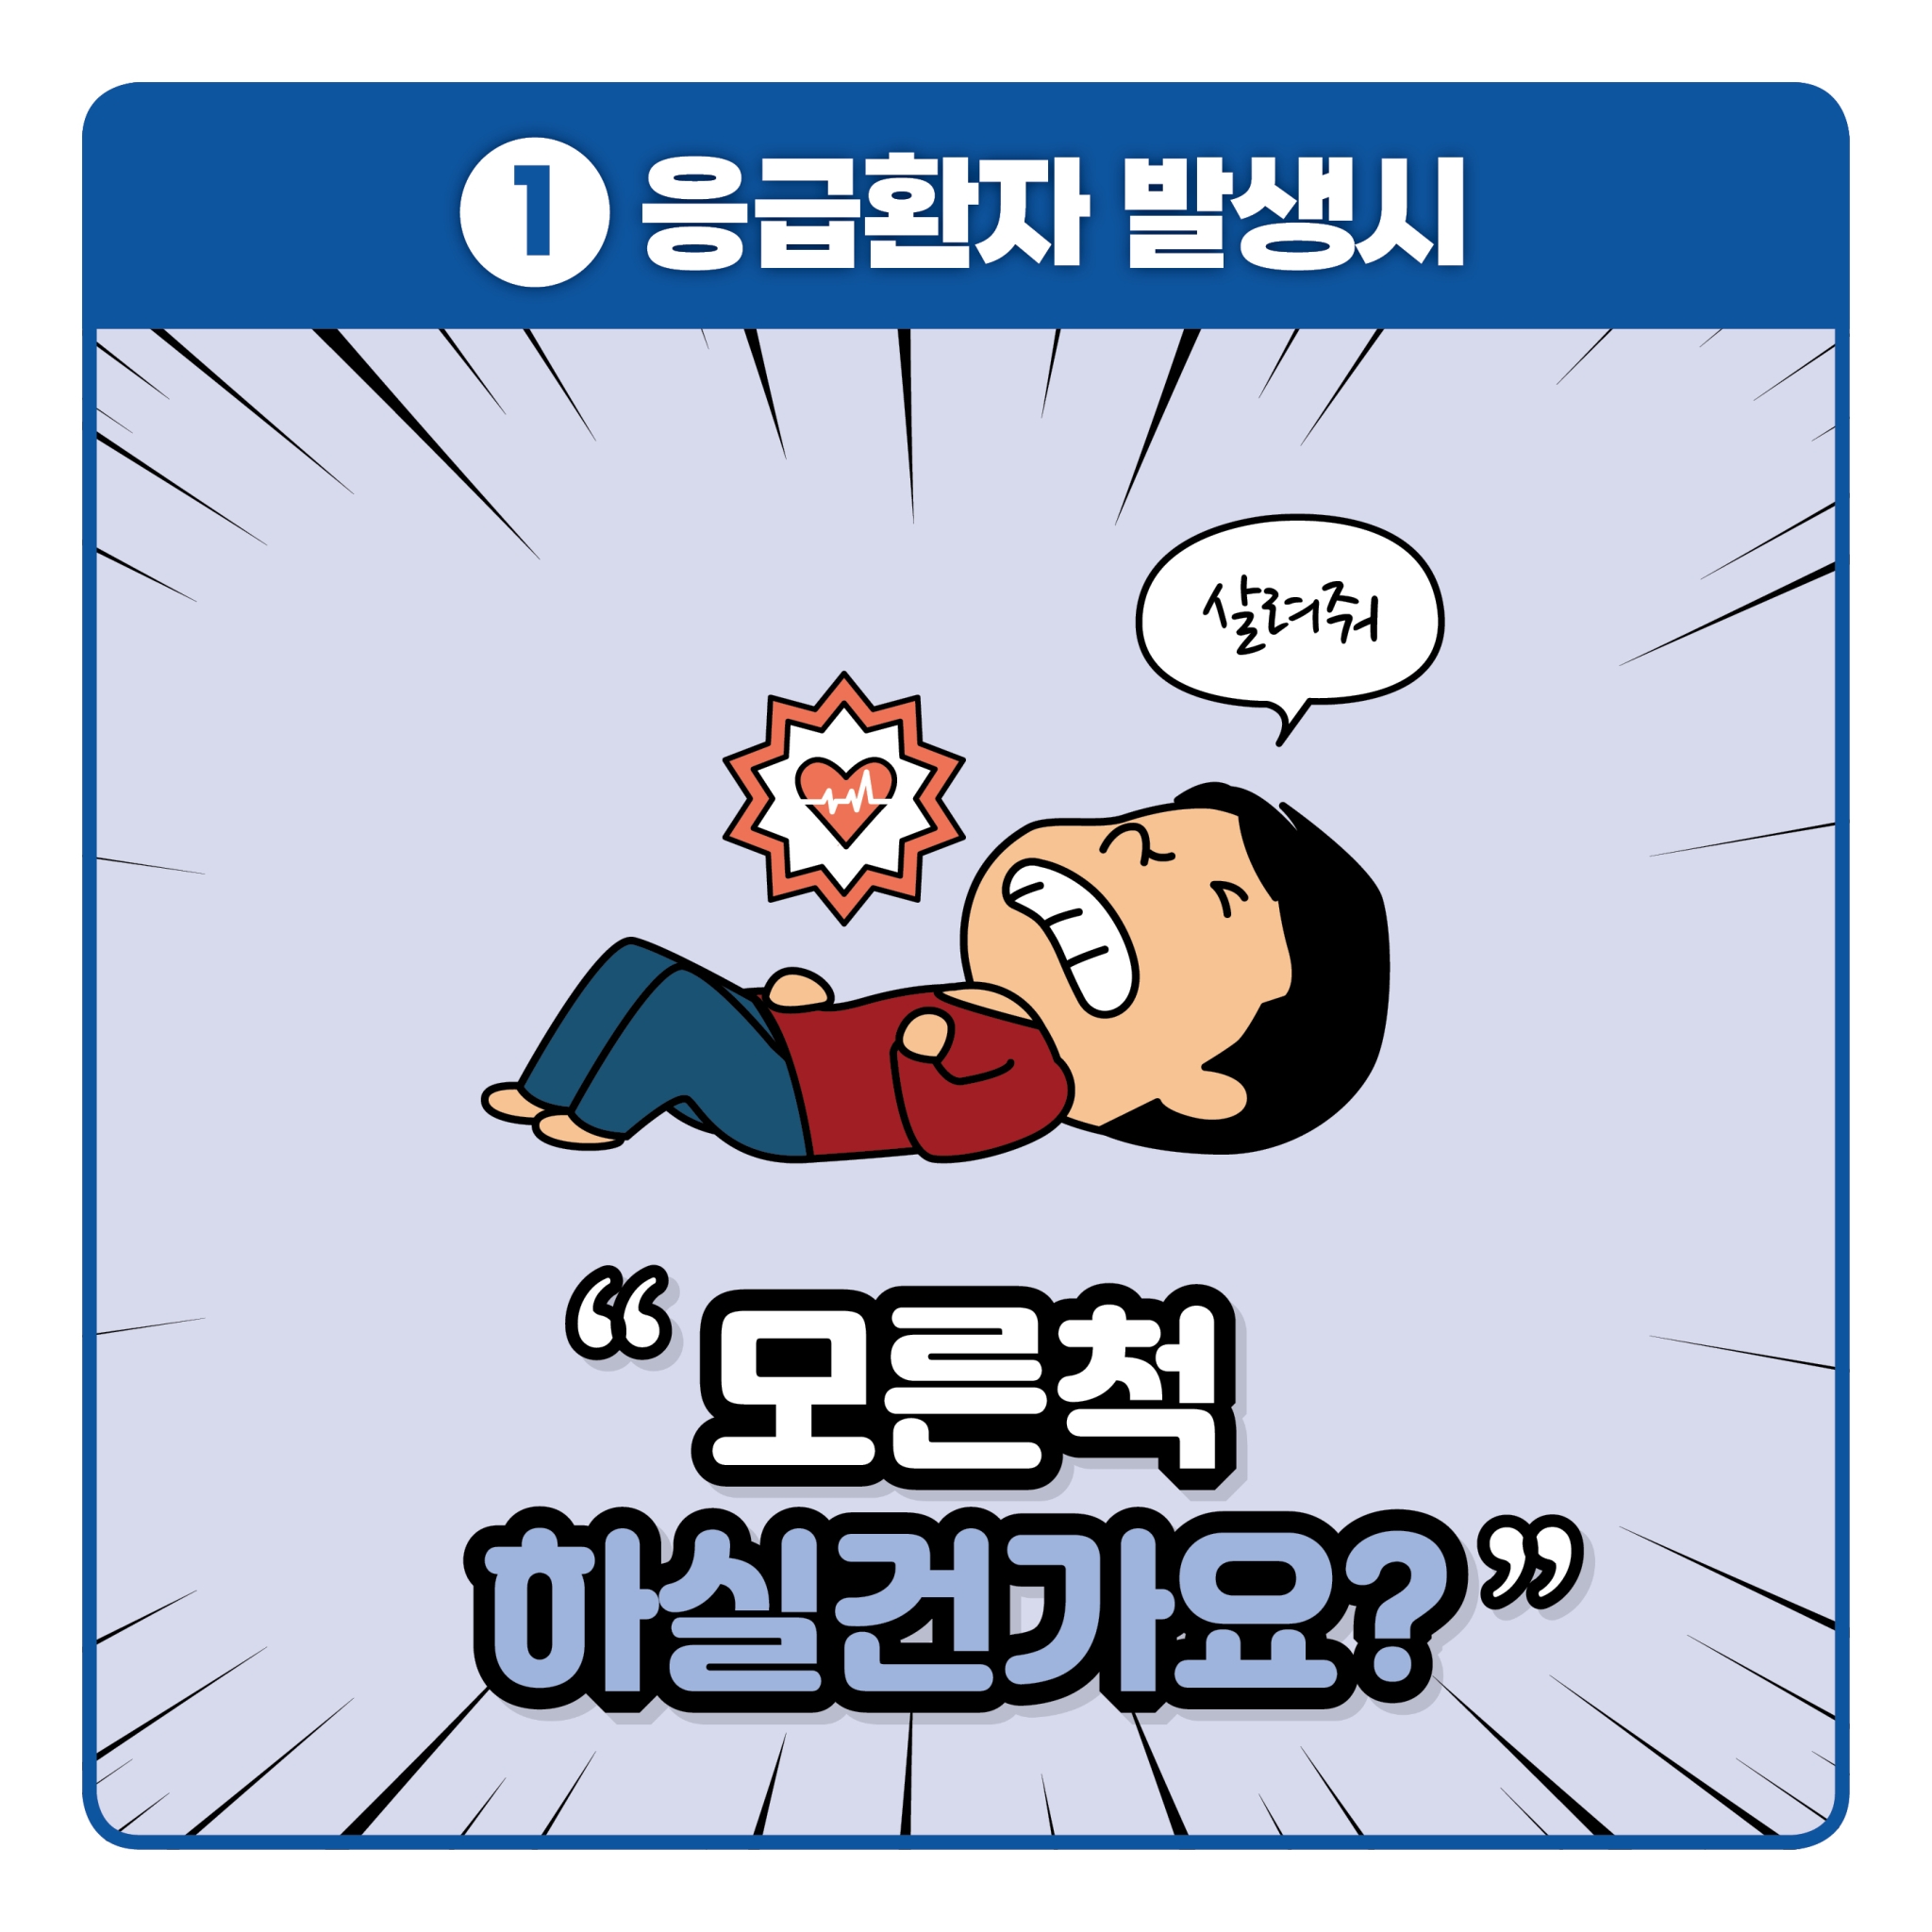 119 응급처치영상 공모전 카드뉴스(파랑)_2